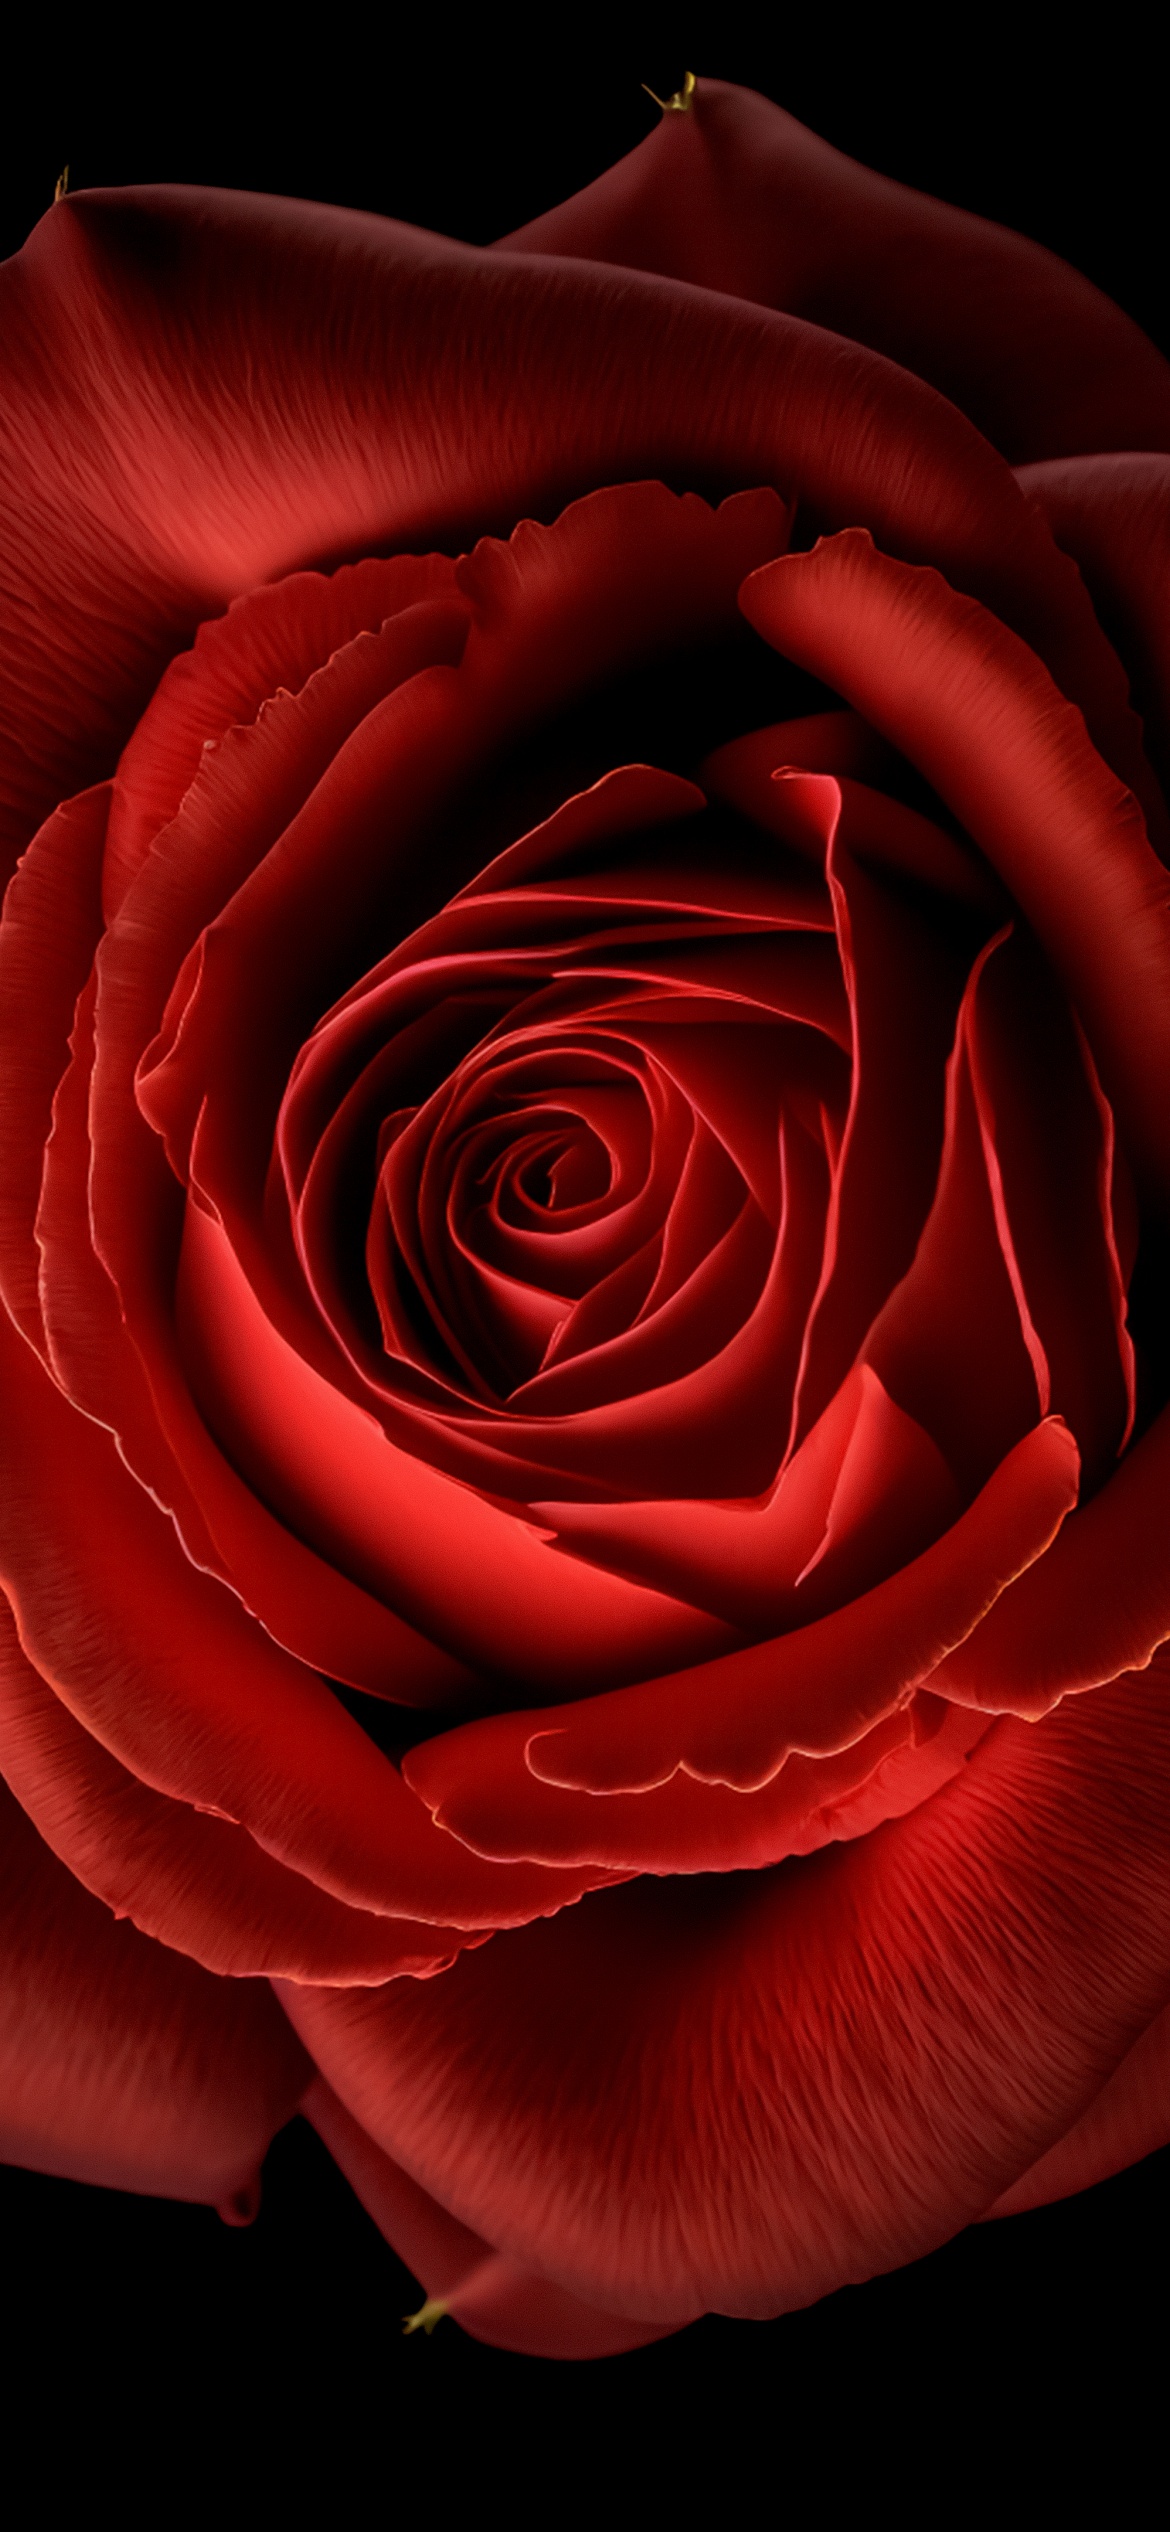 45+] Red Rose Wallpaper for Facebook - WallpaperSafari